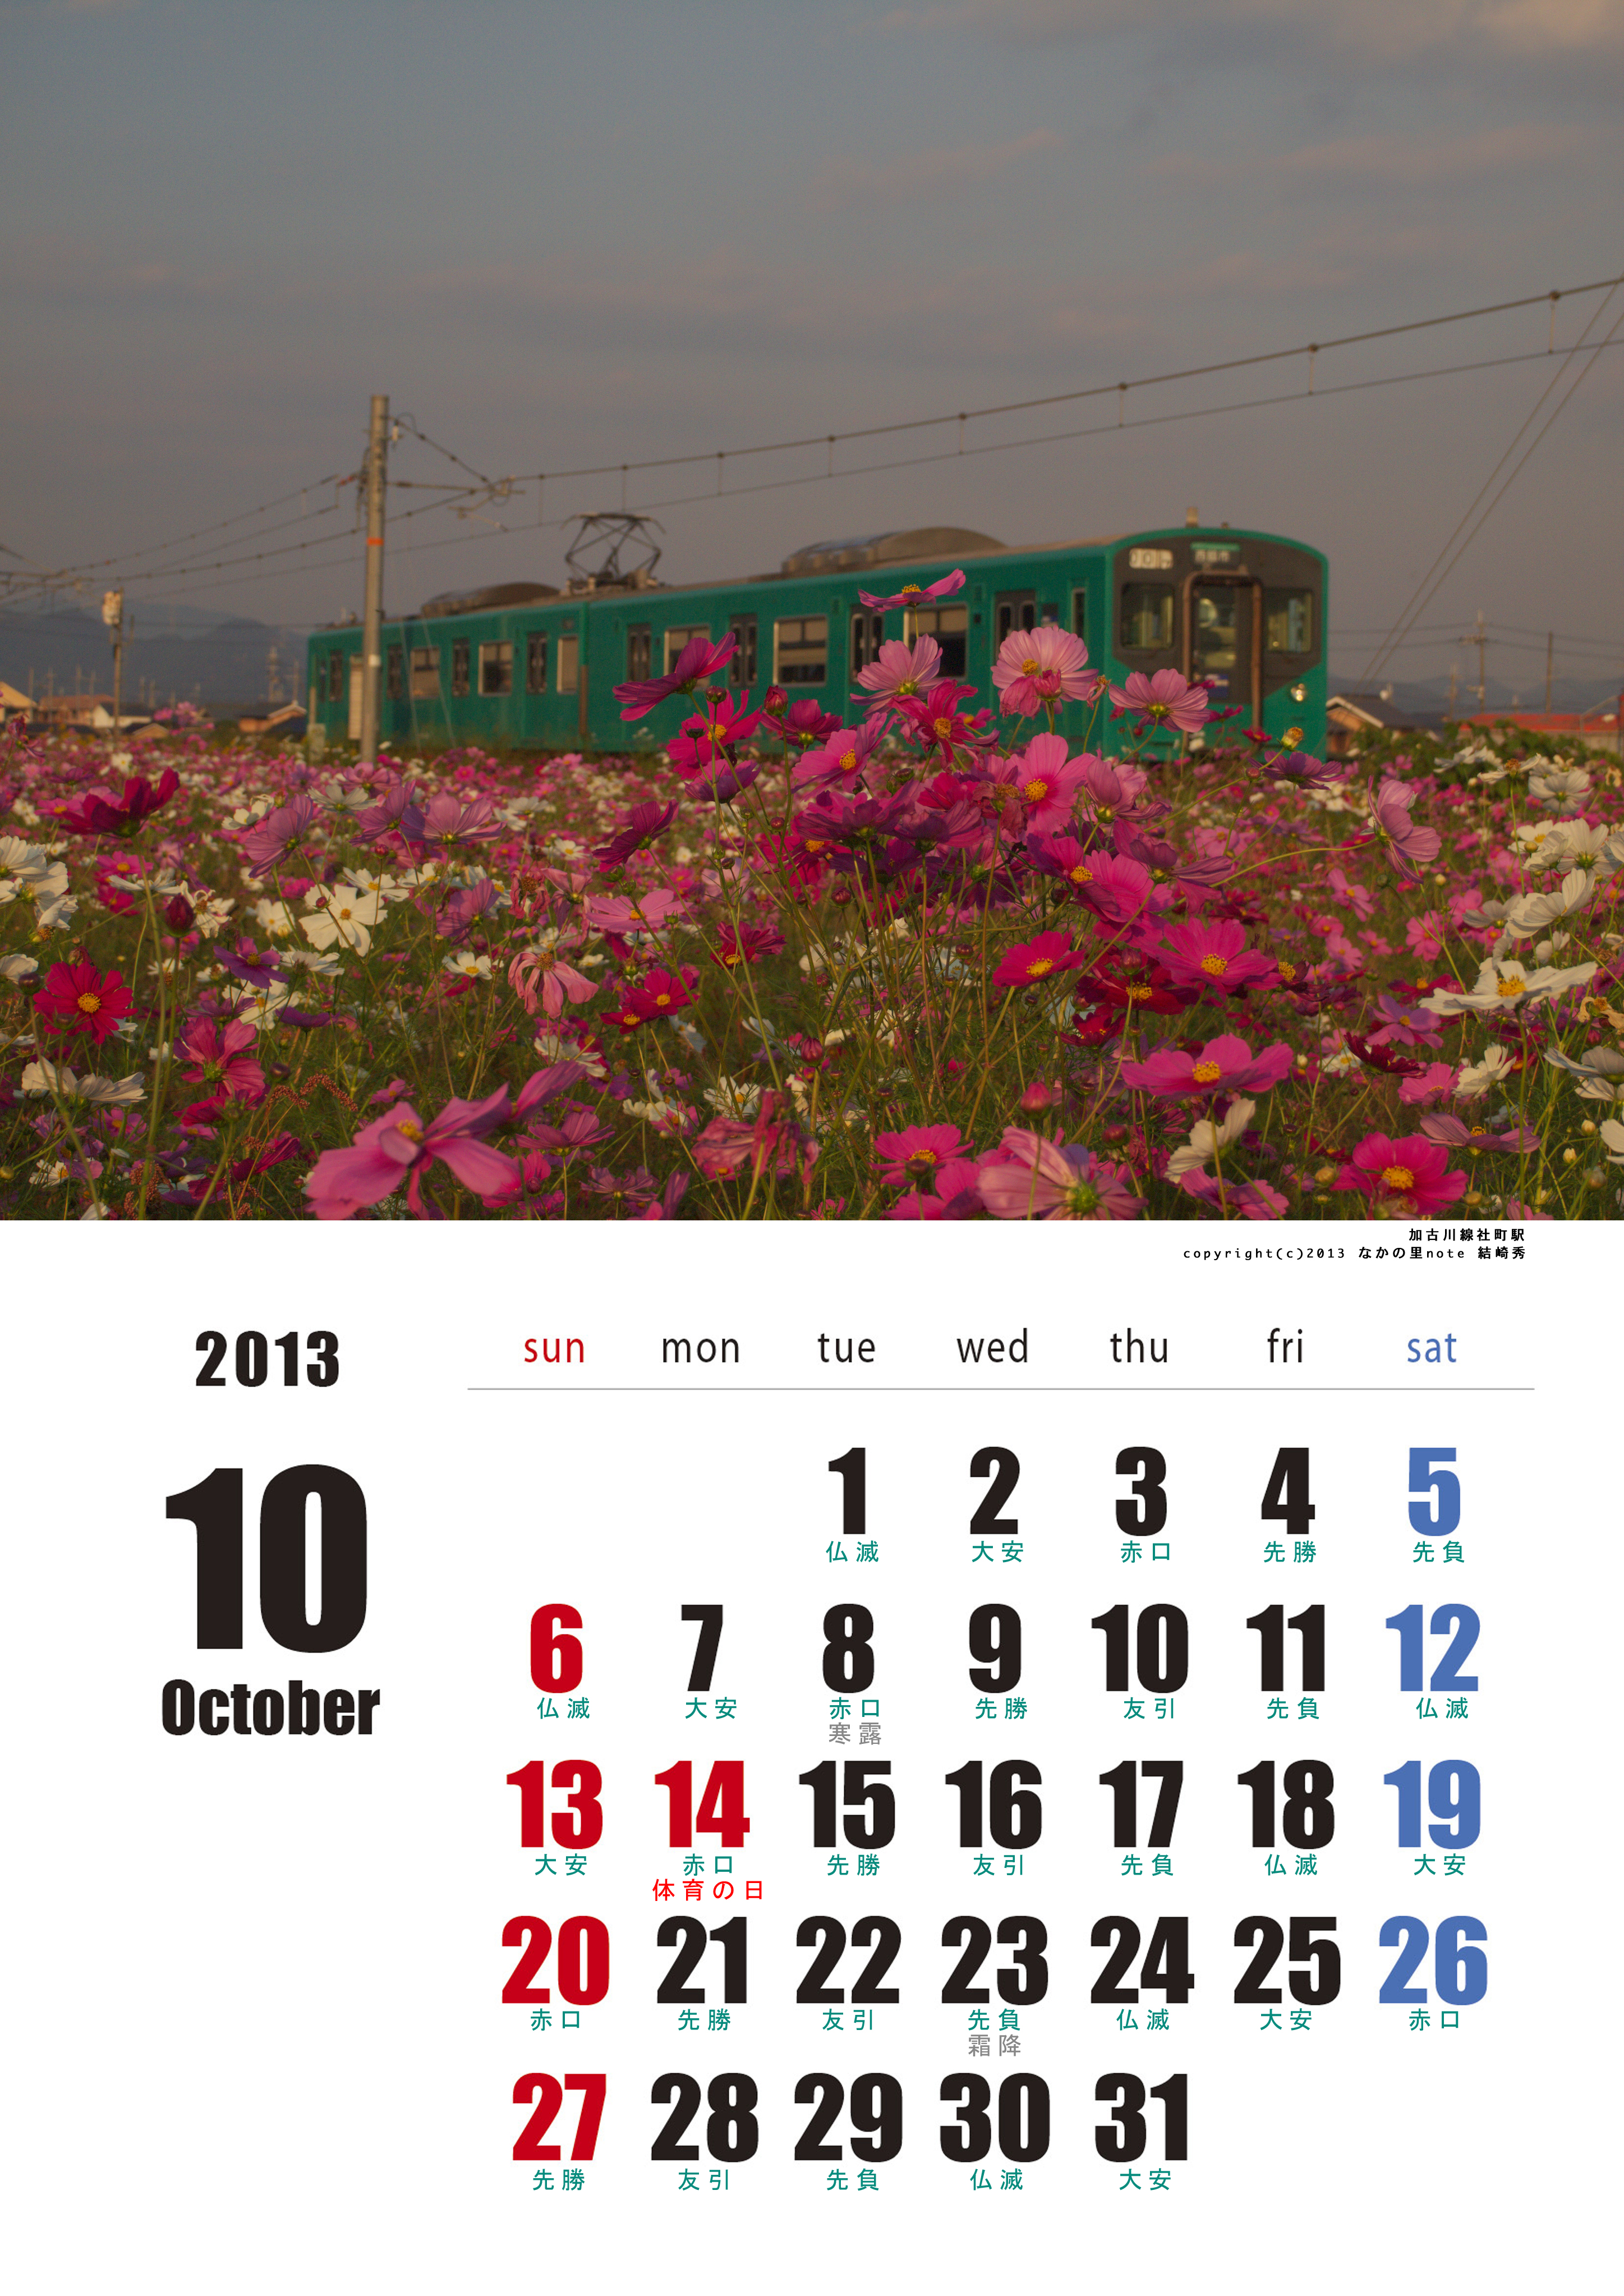 13年10月六曜ありカレンダー 北播磨ローカルネットワーク